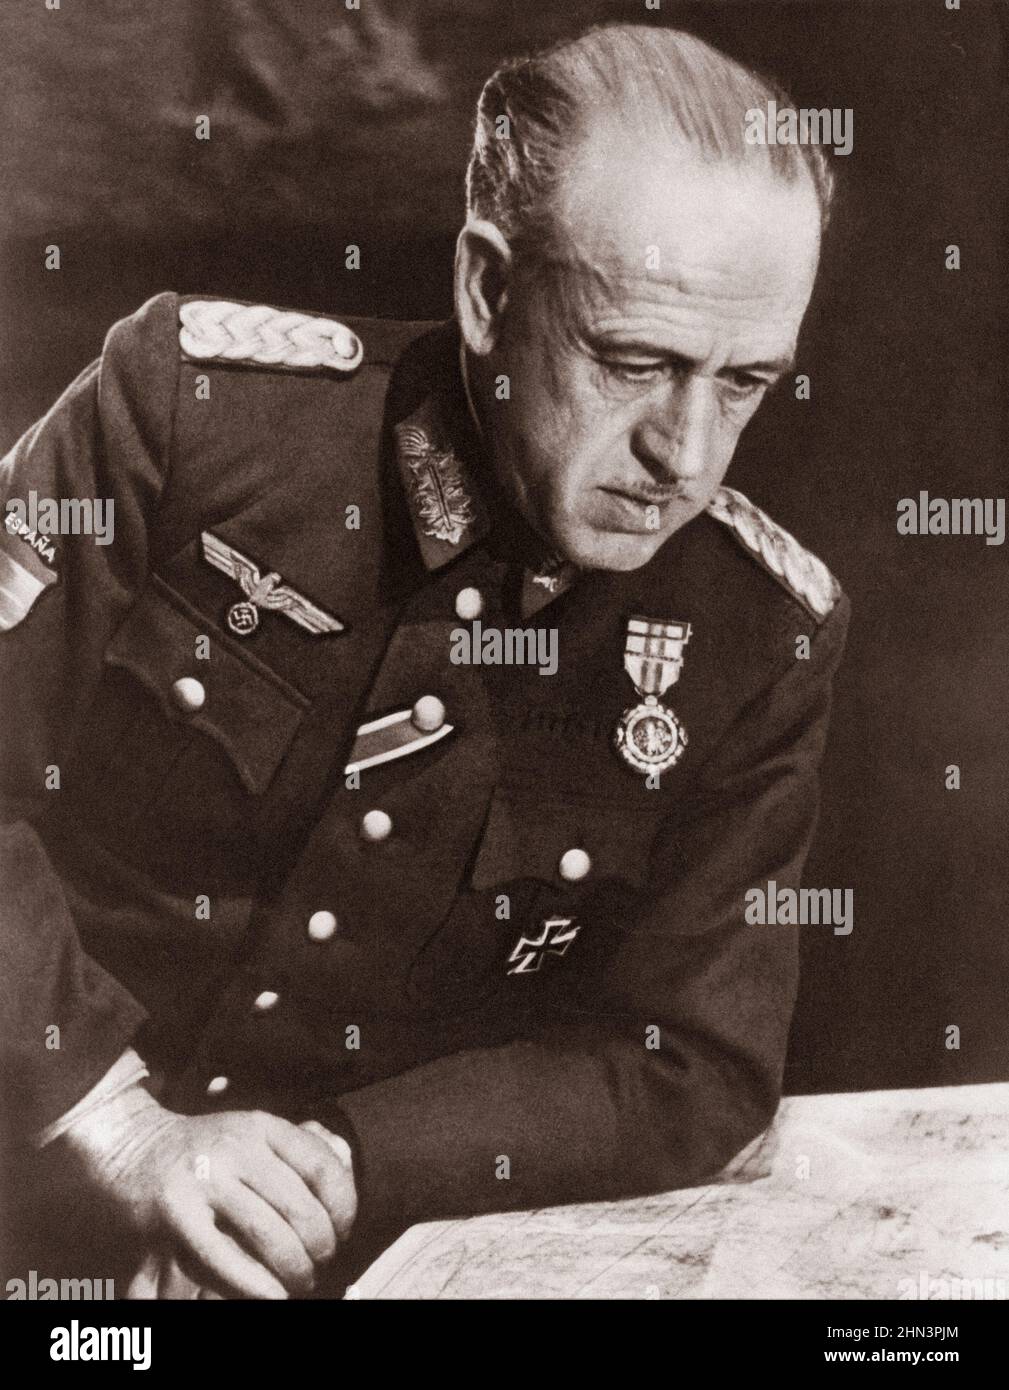 Archivfoto von Emilio Esteban Infantes. Emilio Esteban-Infantes Martín (1892 – 1962) war ein spanischer Offizier, der während des Spanischen Bürgerkrieges diente Stockfoto